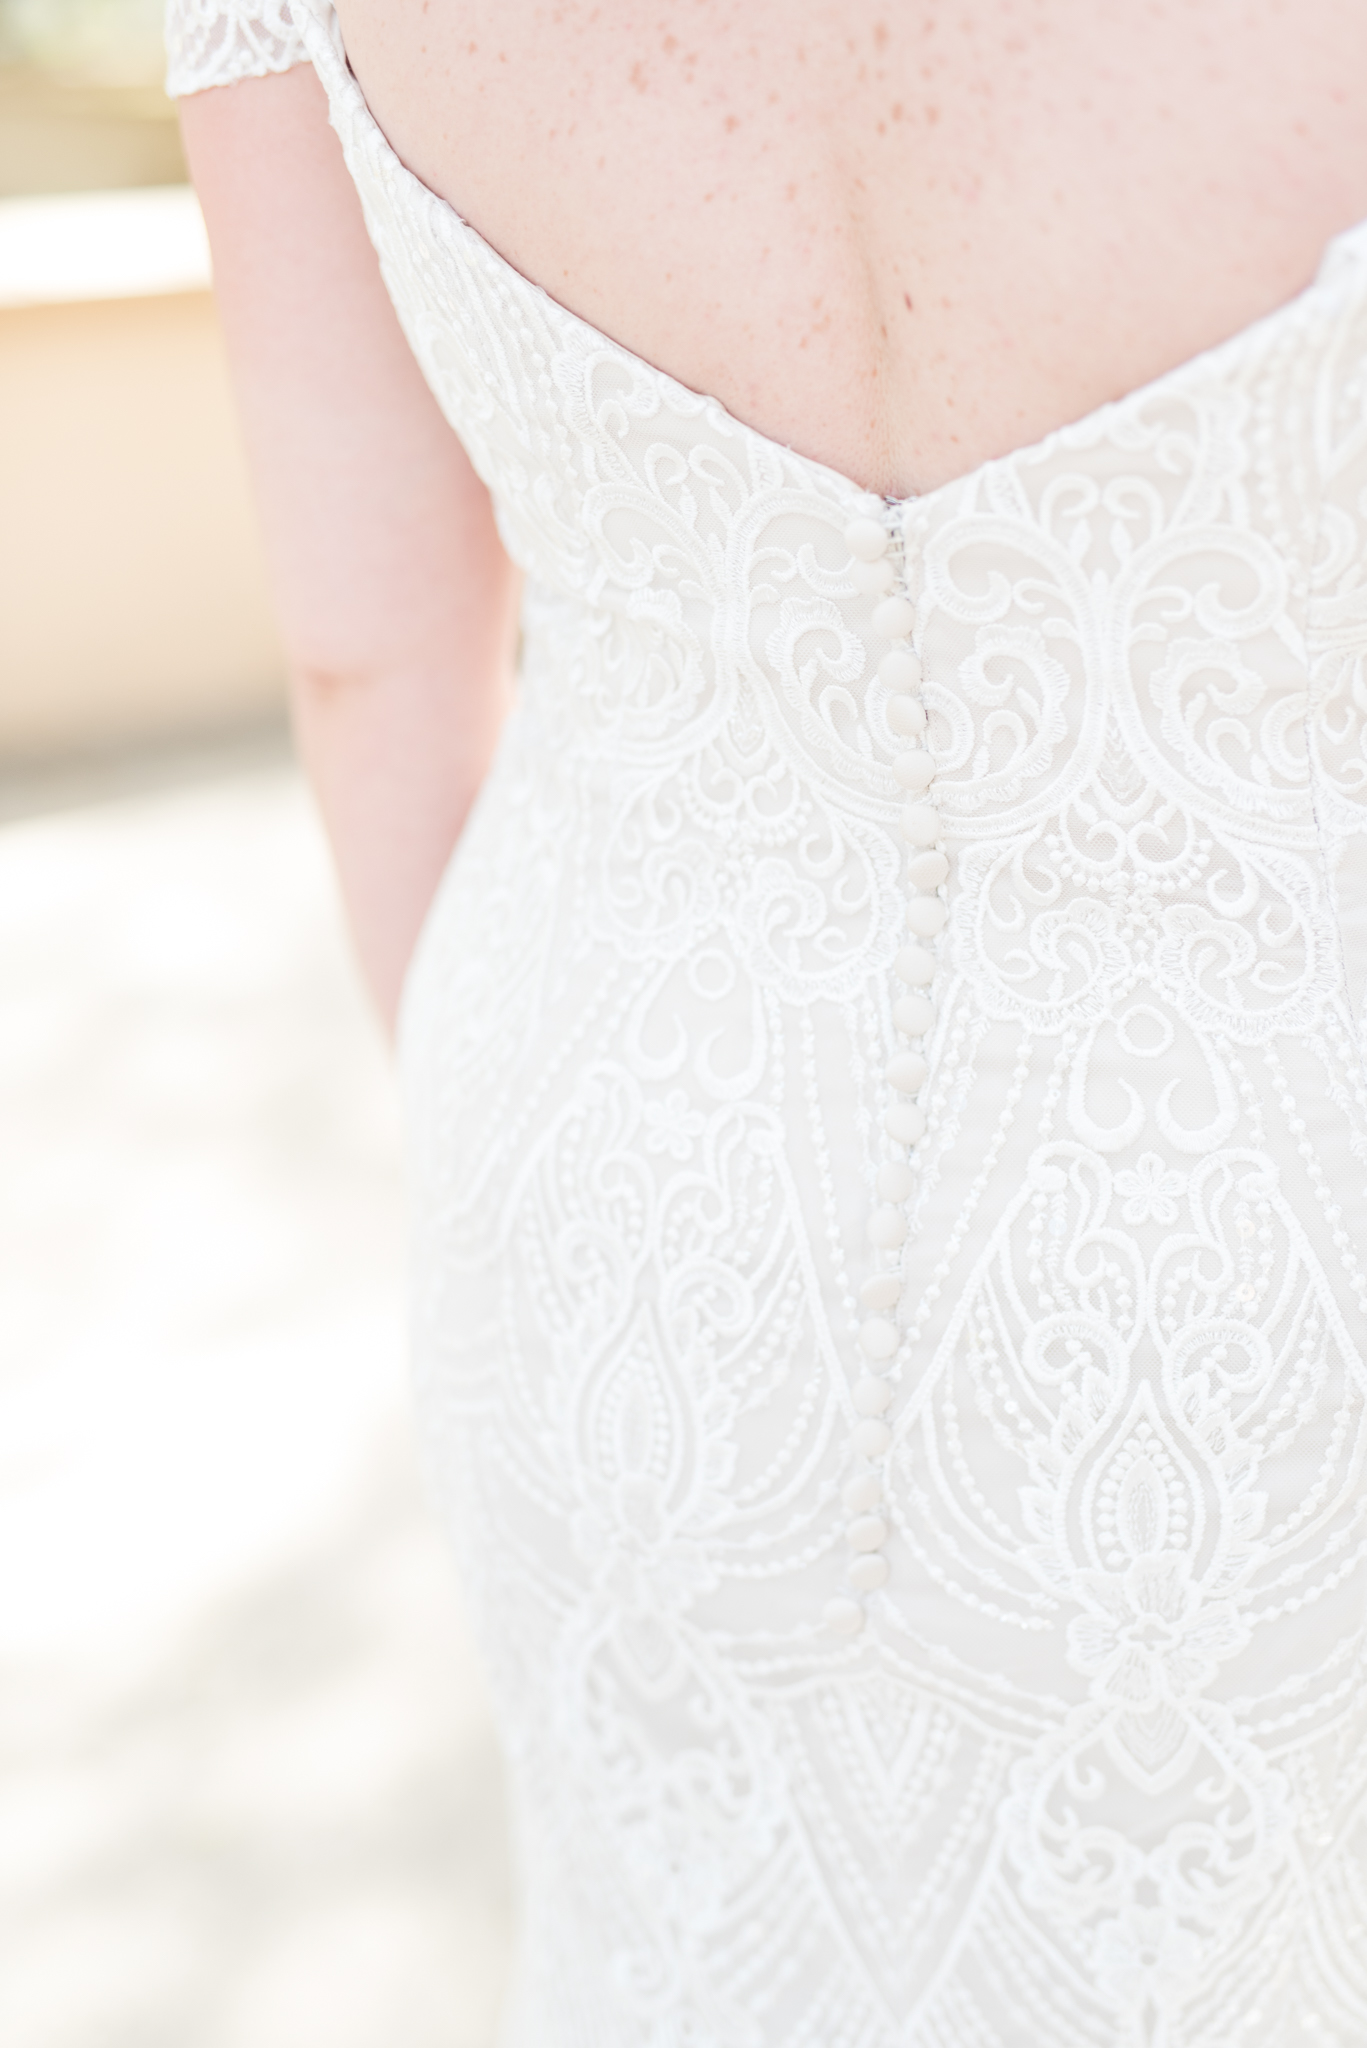 Details of back of wedding dress.